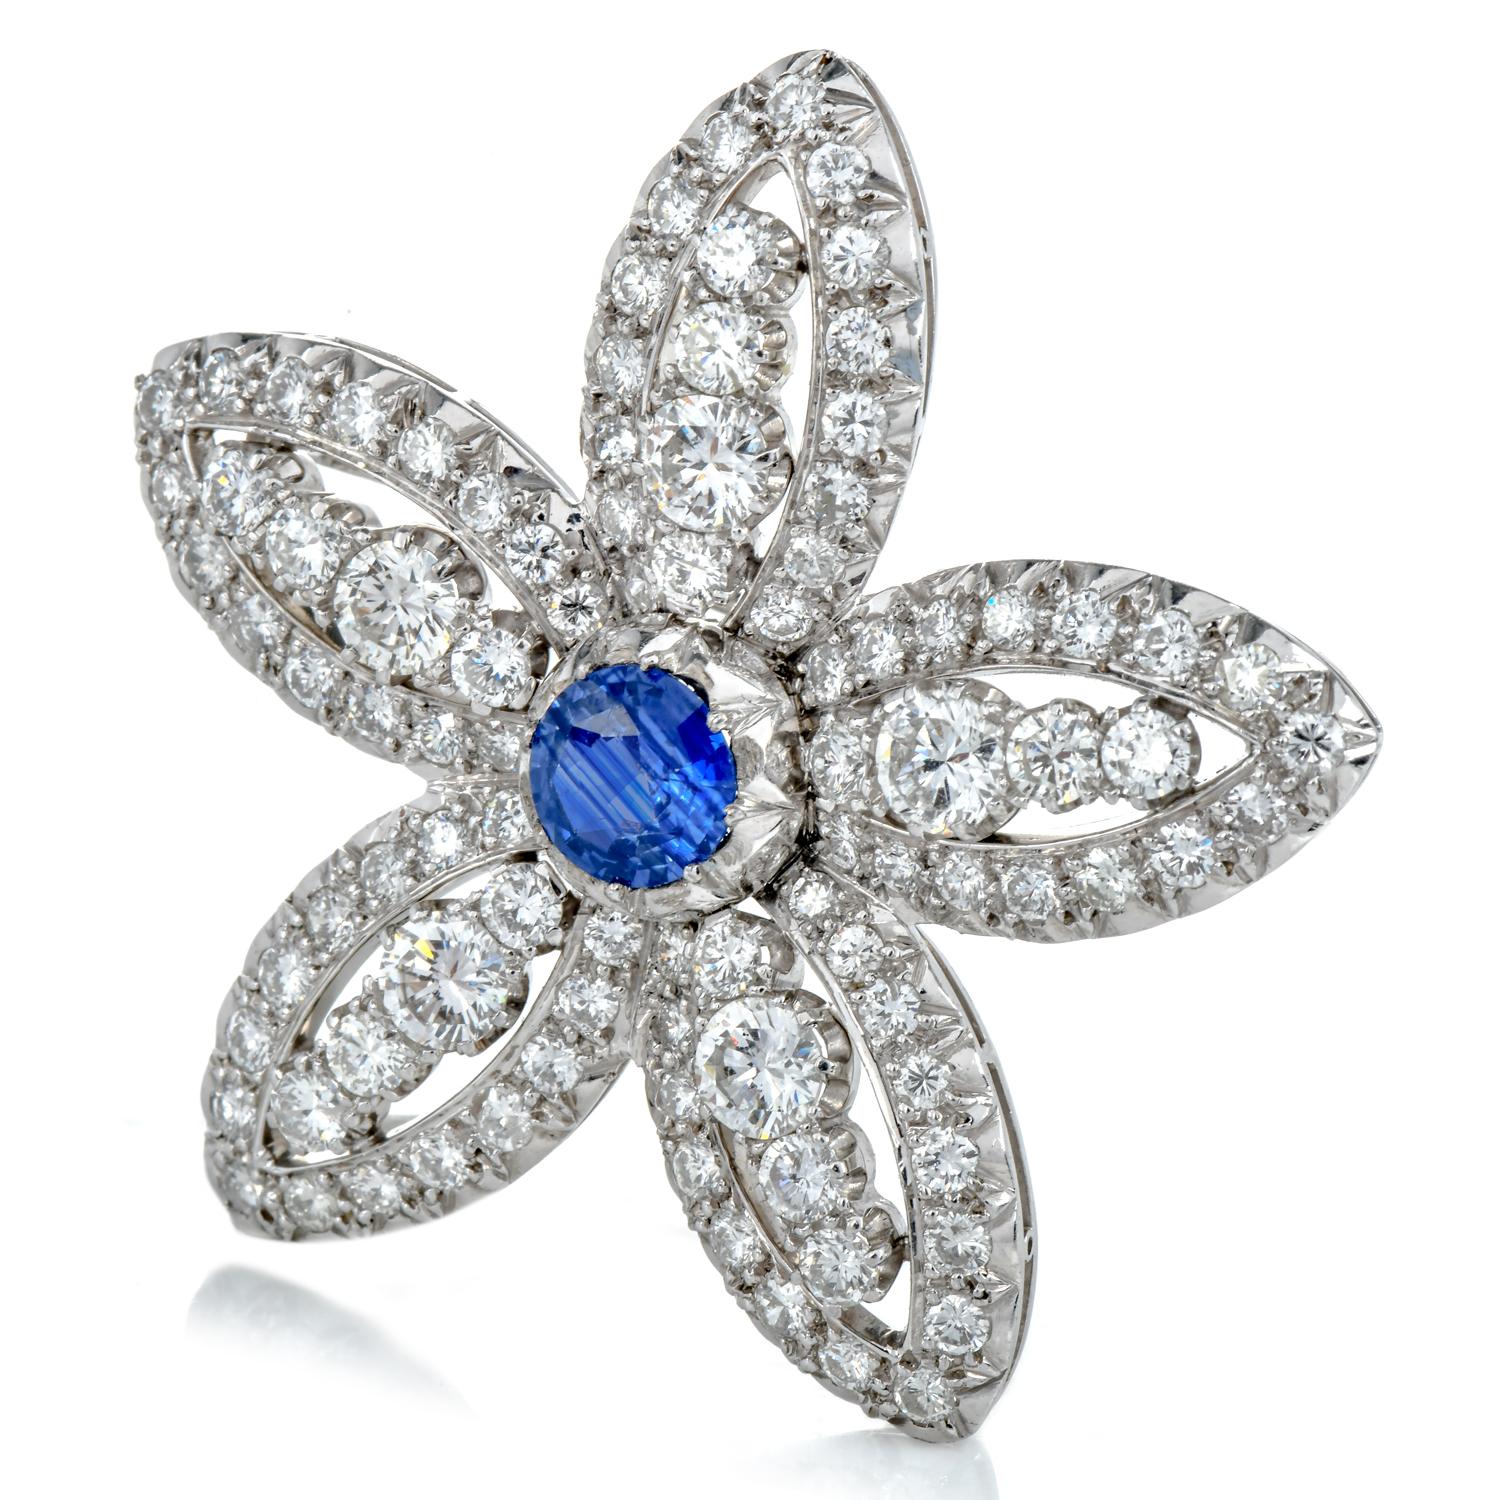 Cette épingle à fleur étoilée en saphir bleu GIA et diamant platine est le complément idéal d'une écharpe ou d'un chemisier.

Réalisée en platine, elle présente un attrait intemporel et une brillance éclatante.

Le point focal de cette pièce est le